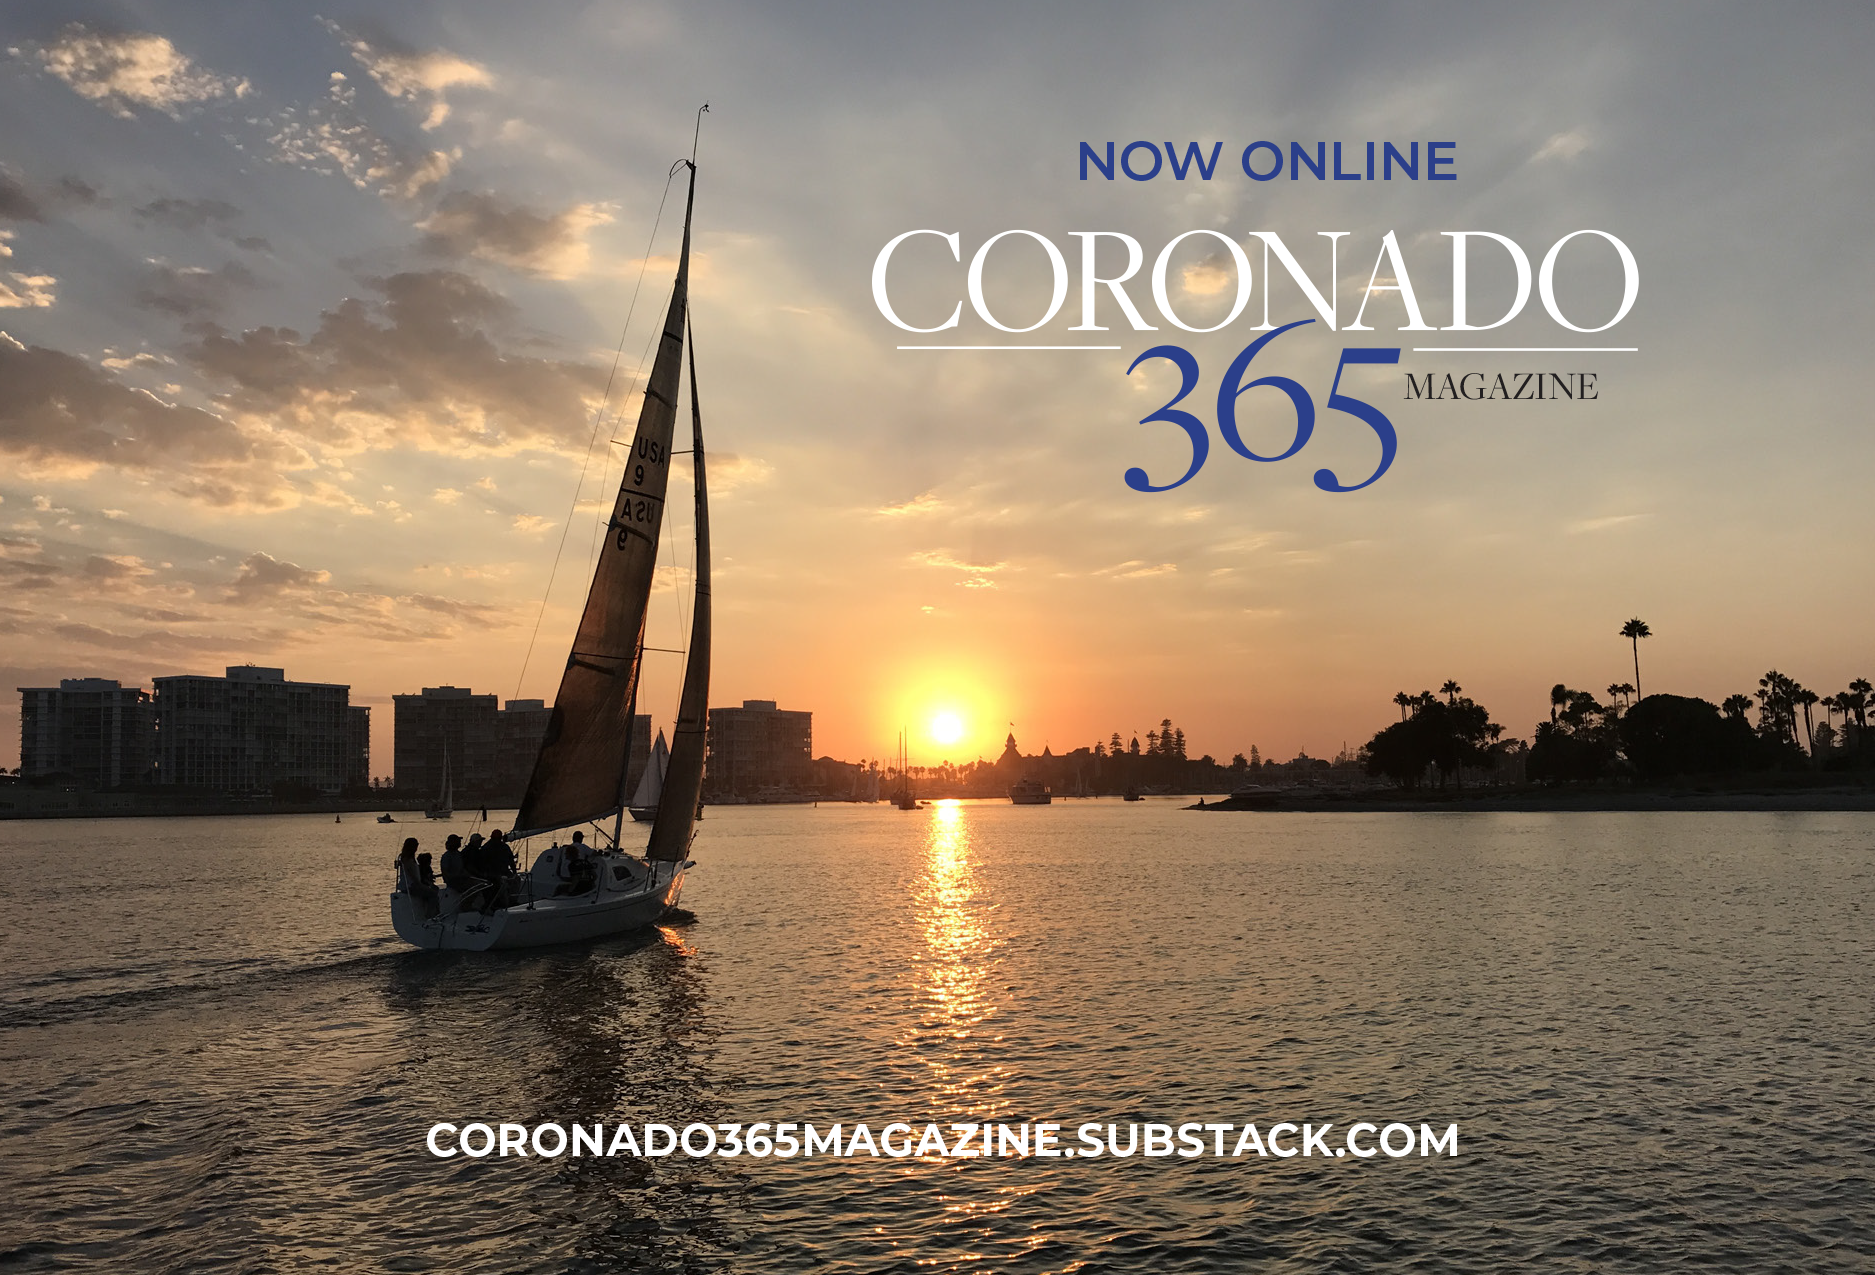 Coronado 365 Magazine